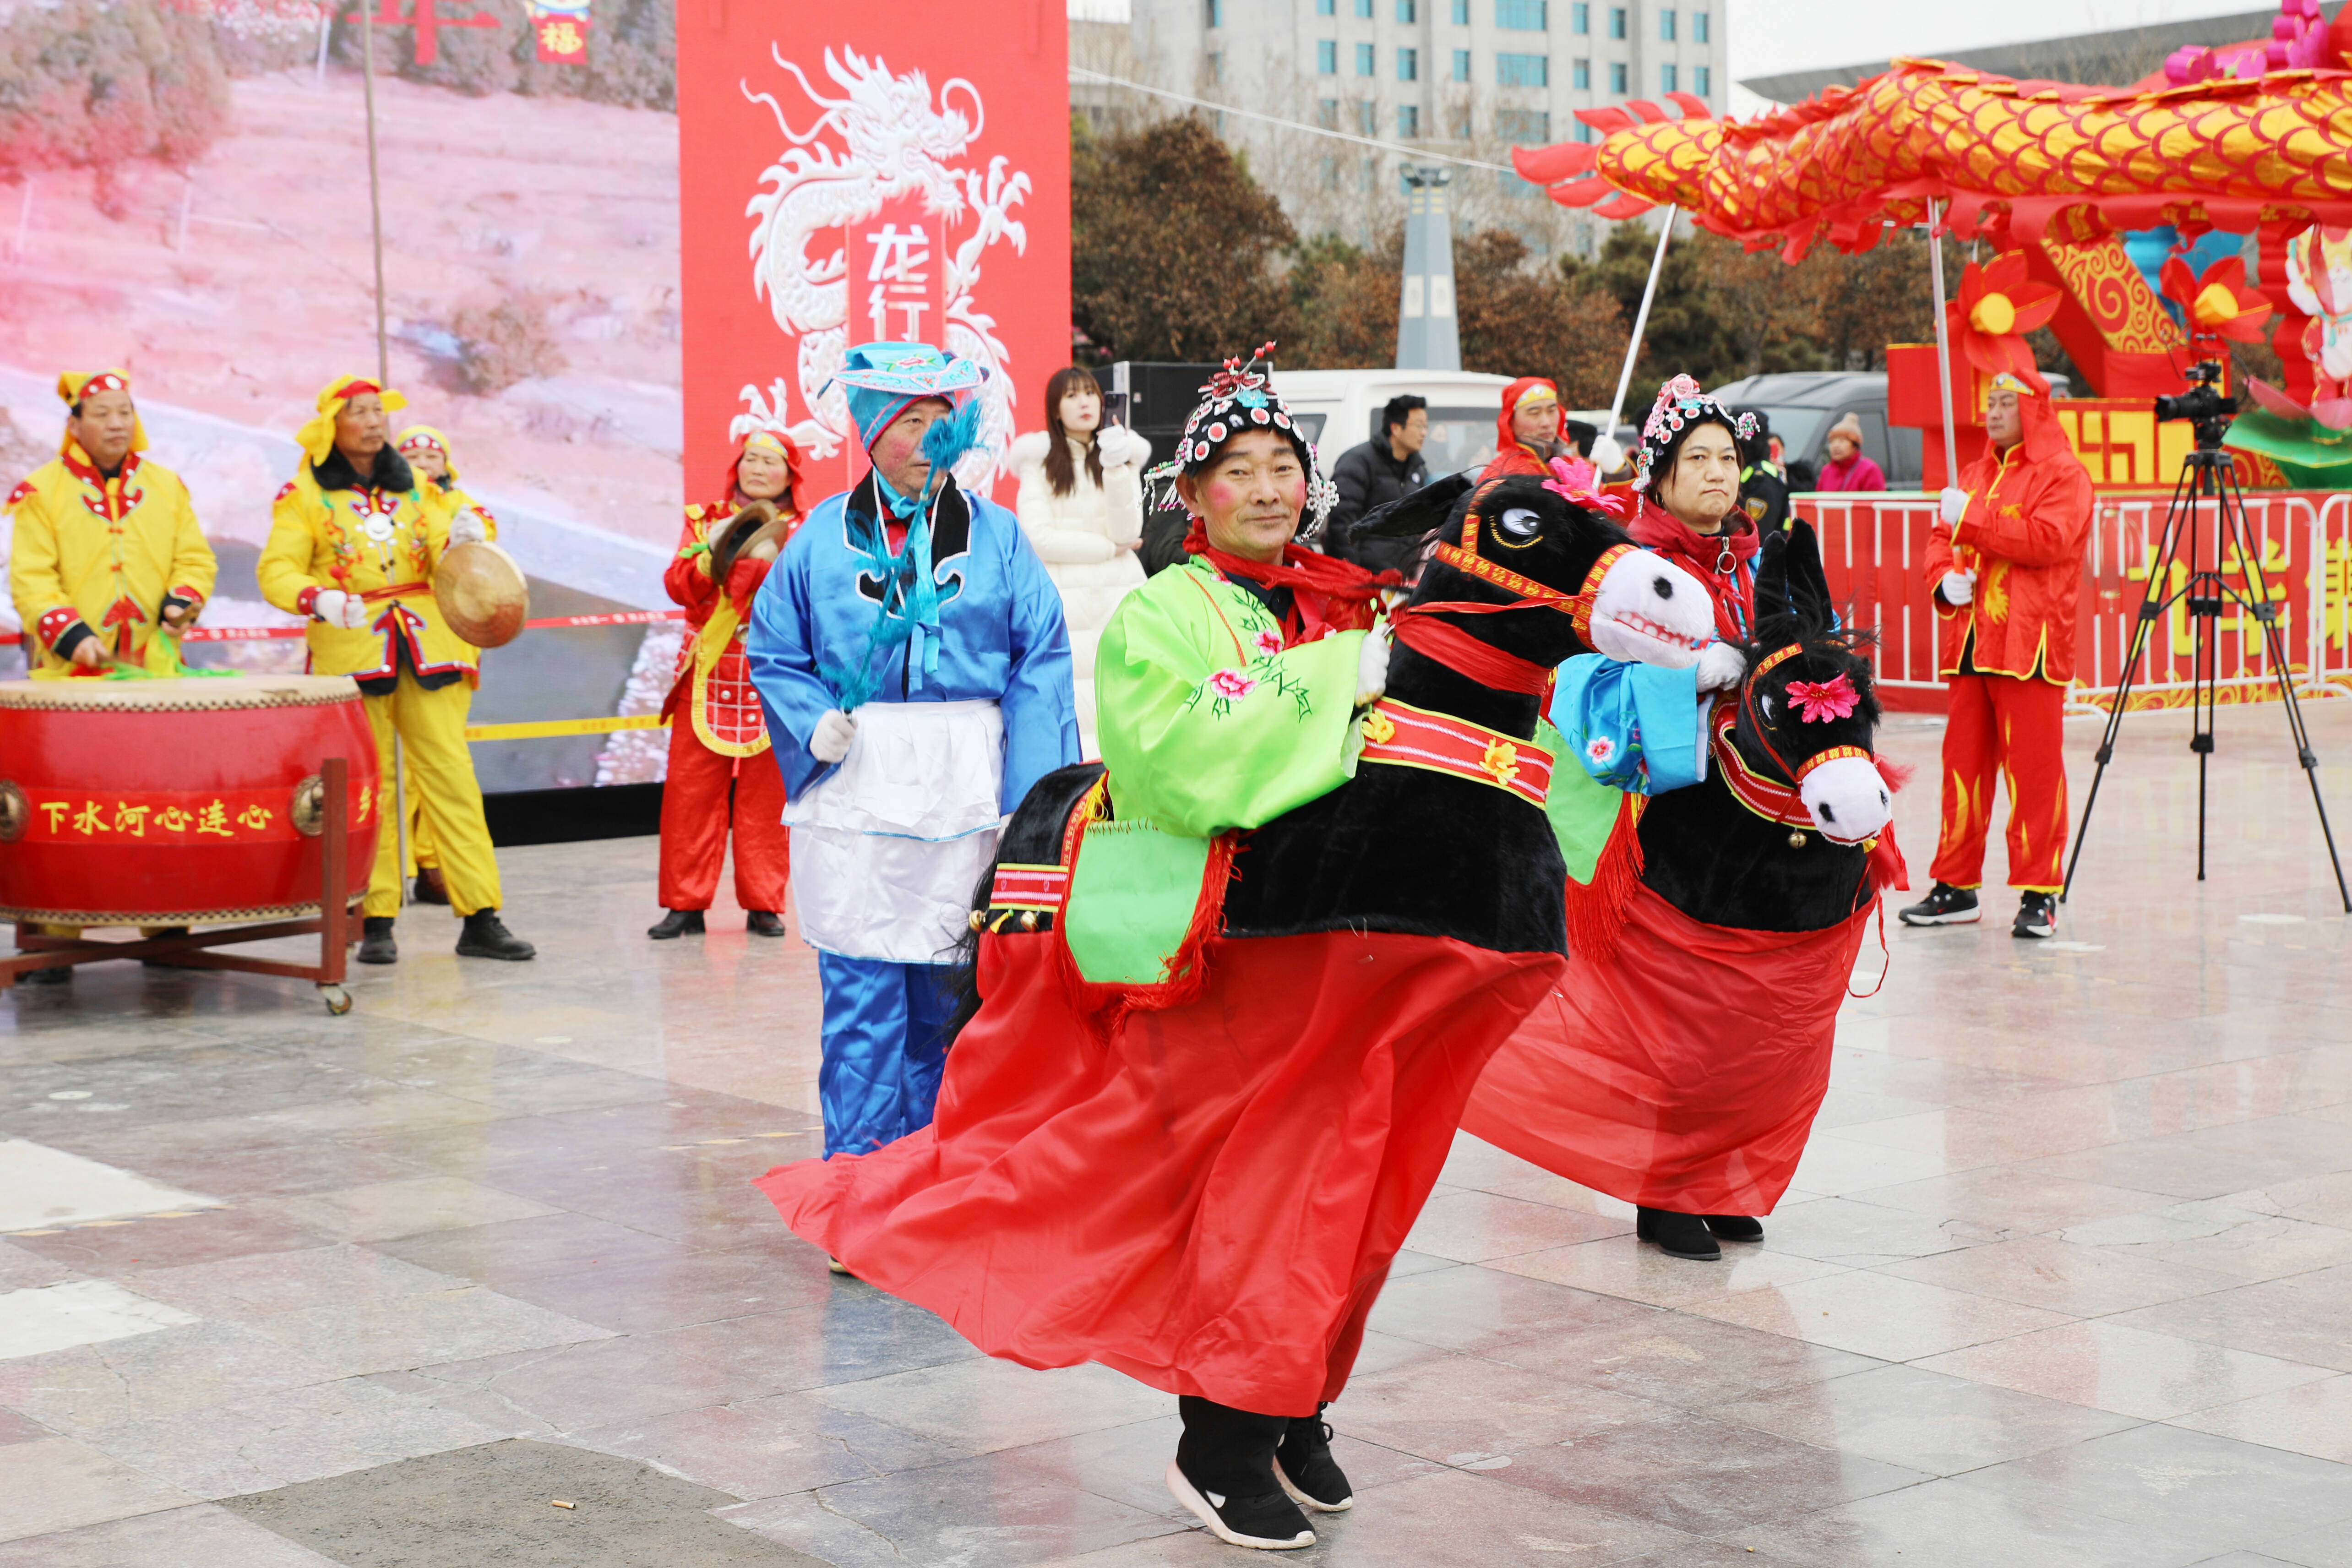 弘扬地方优秀传统文化,民俗文化,营造欢乐祥和的元宵节氛围,莱芜区